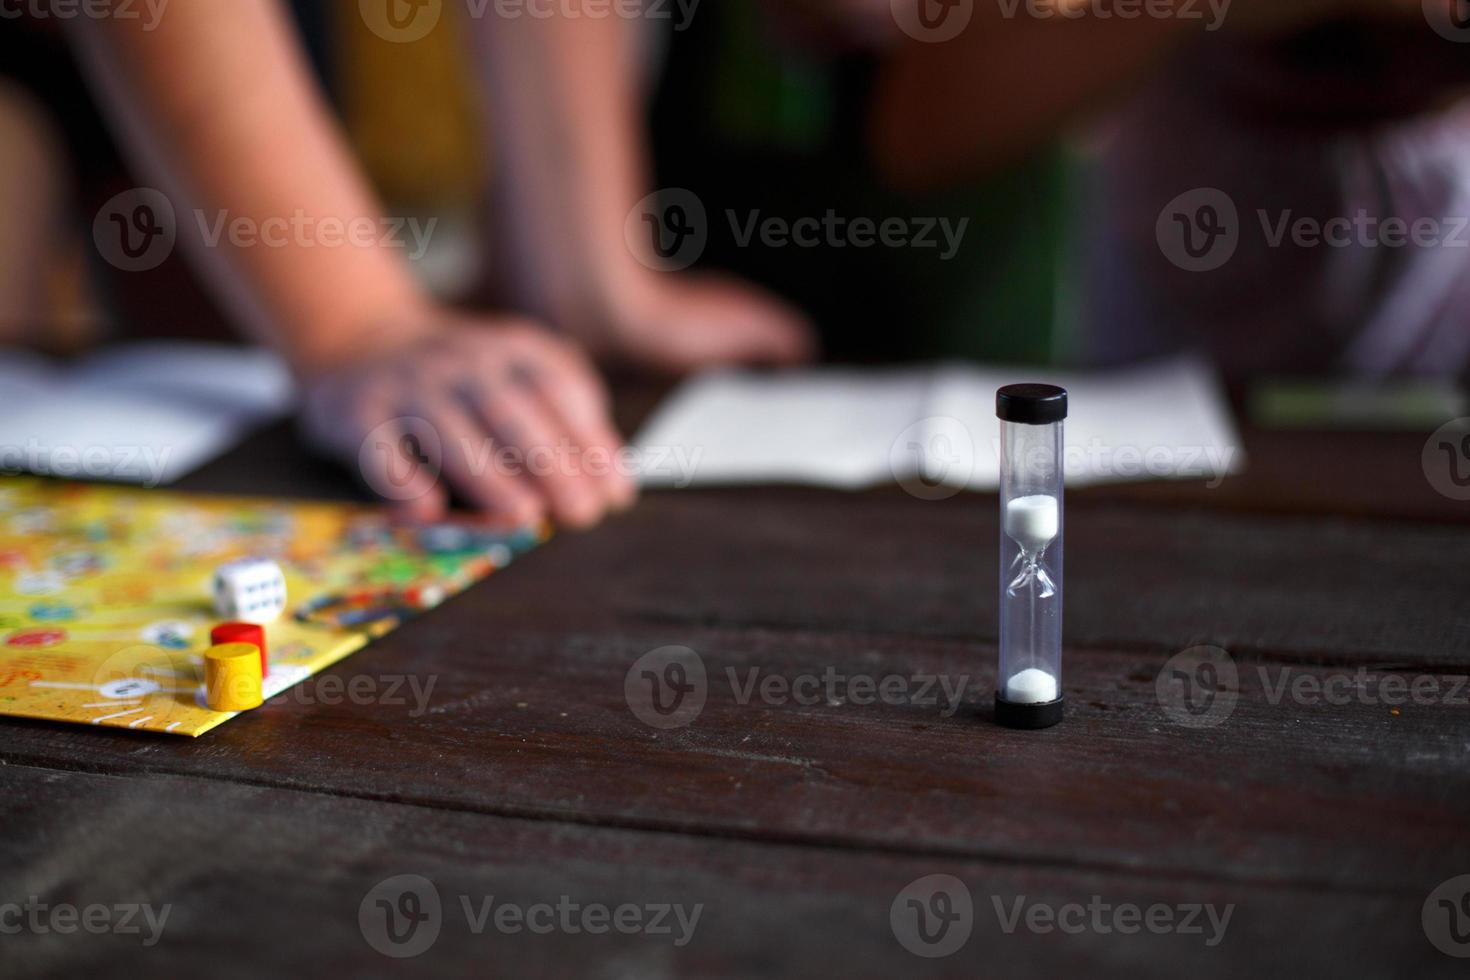 bordspelbord, chips, kubus, timer op een donkere houten tafel en handen op de achtergrond. het concept van teamwork, intellectuele ontspanning, bedrijfsevenement, thuis spelen met kinderen. kopieer ruimte foto